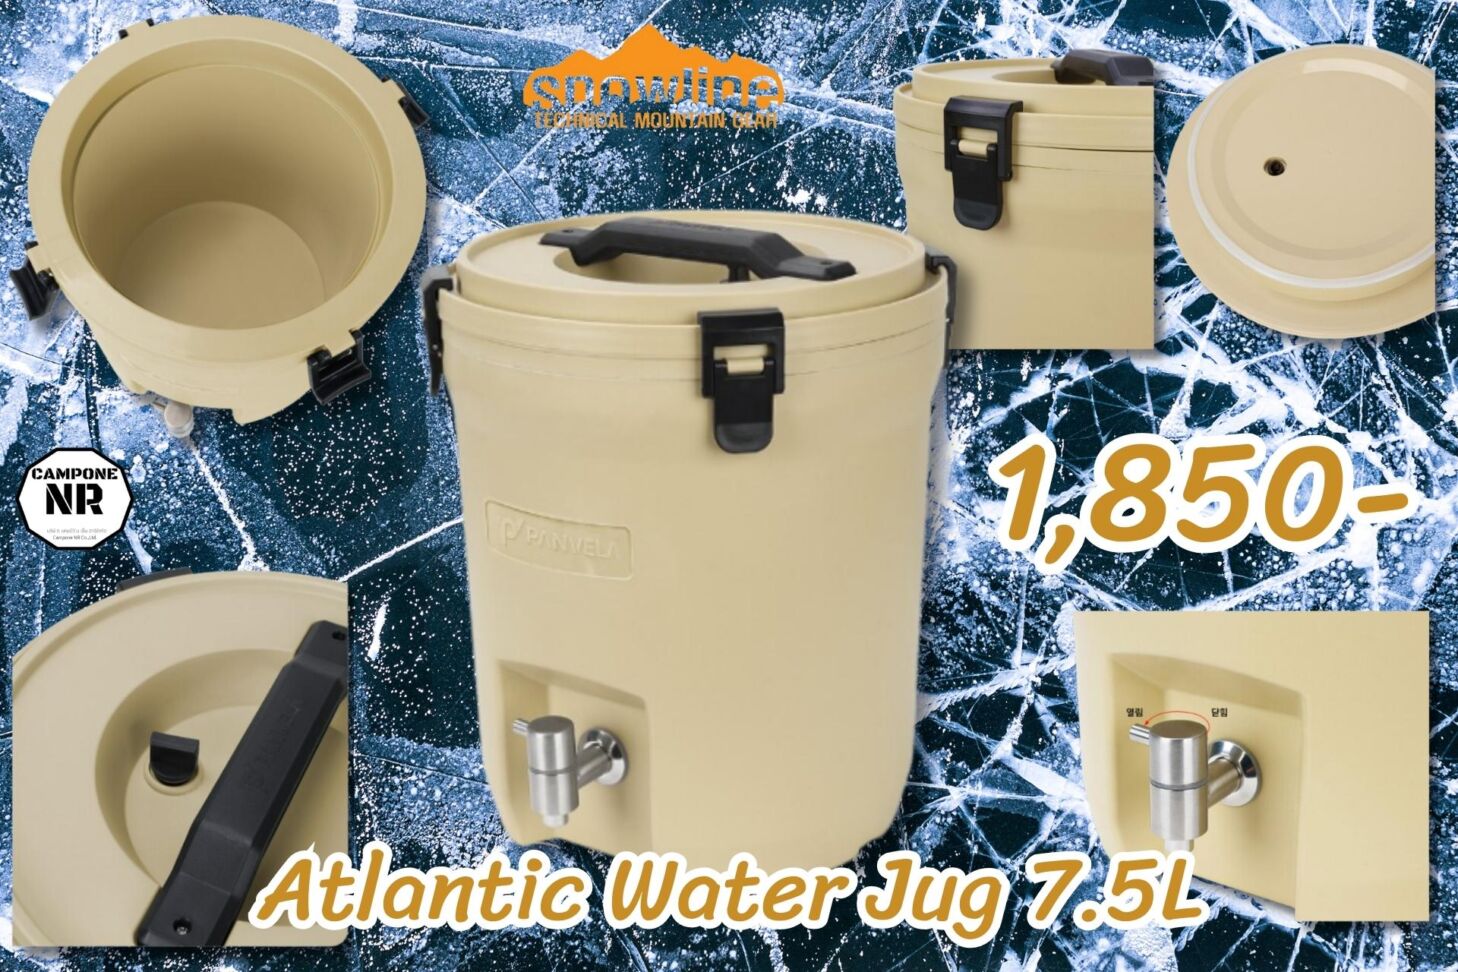 Snowline Atlantic Water Jug 7.5L